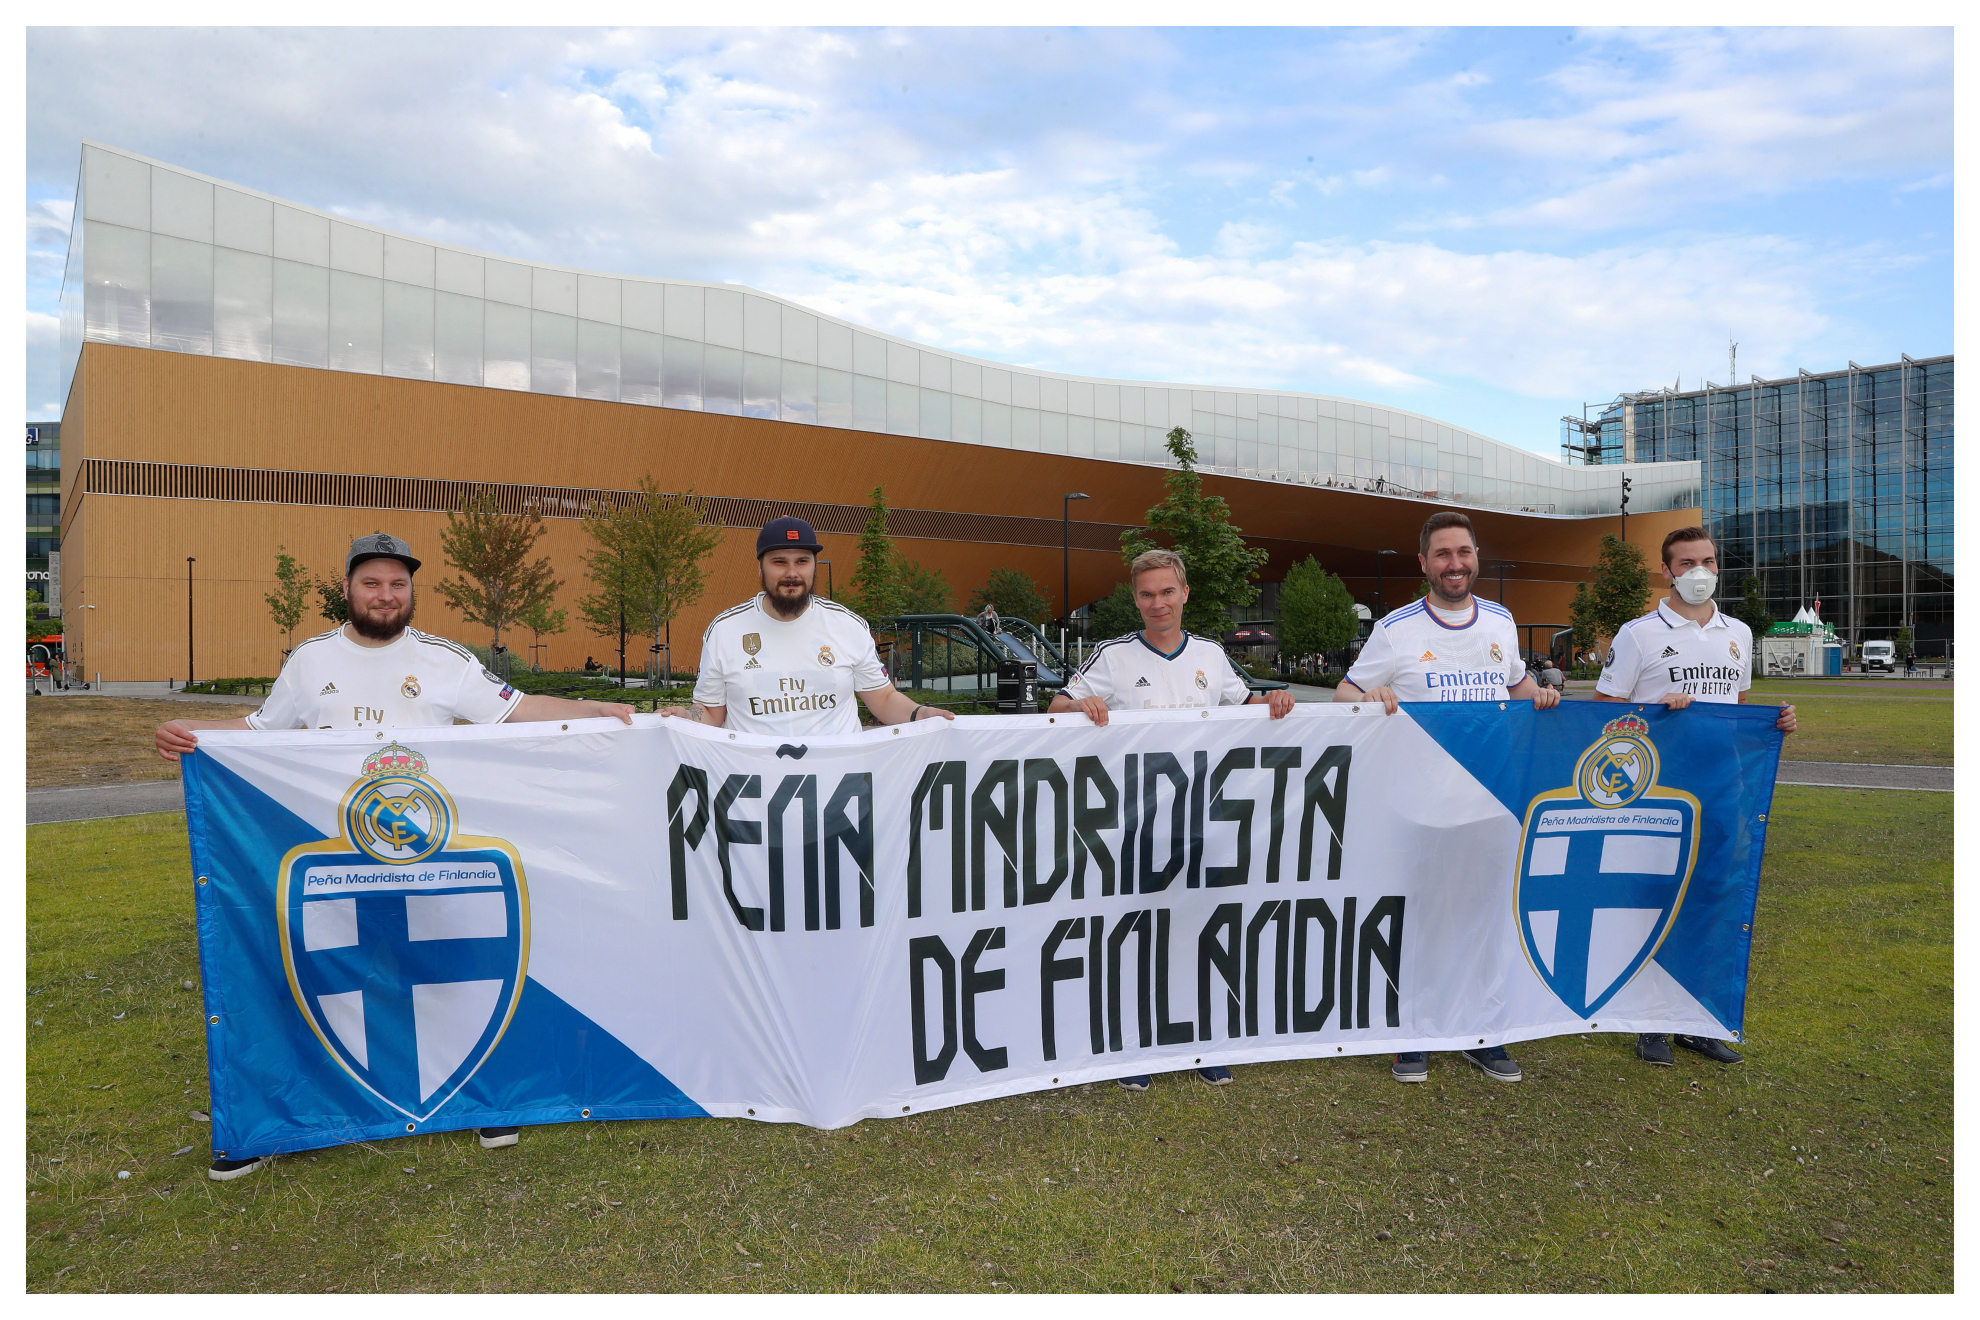 Cinco de los miembros de la peña madridista de Helsinki/CHEMA REY